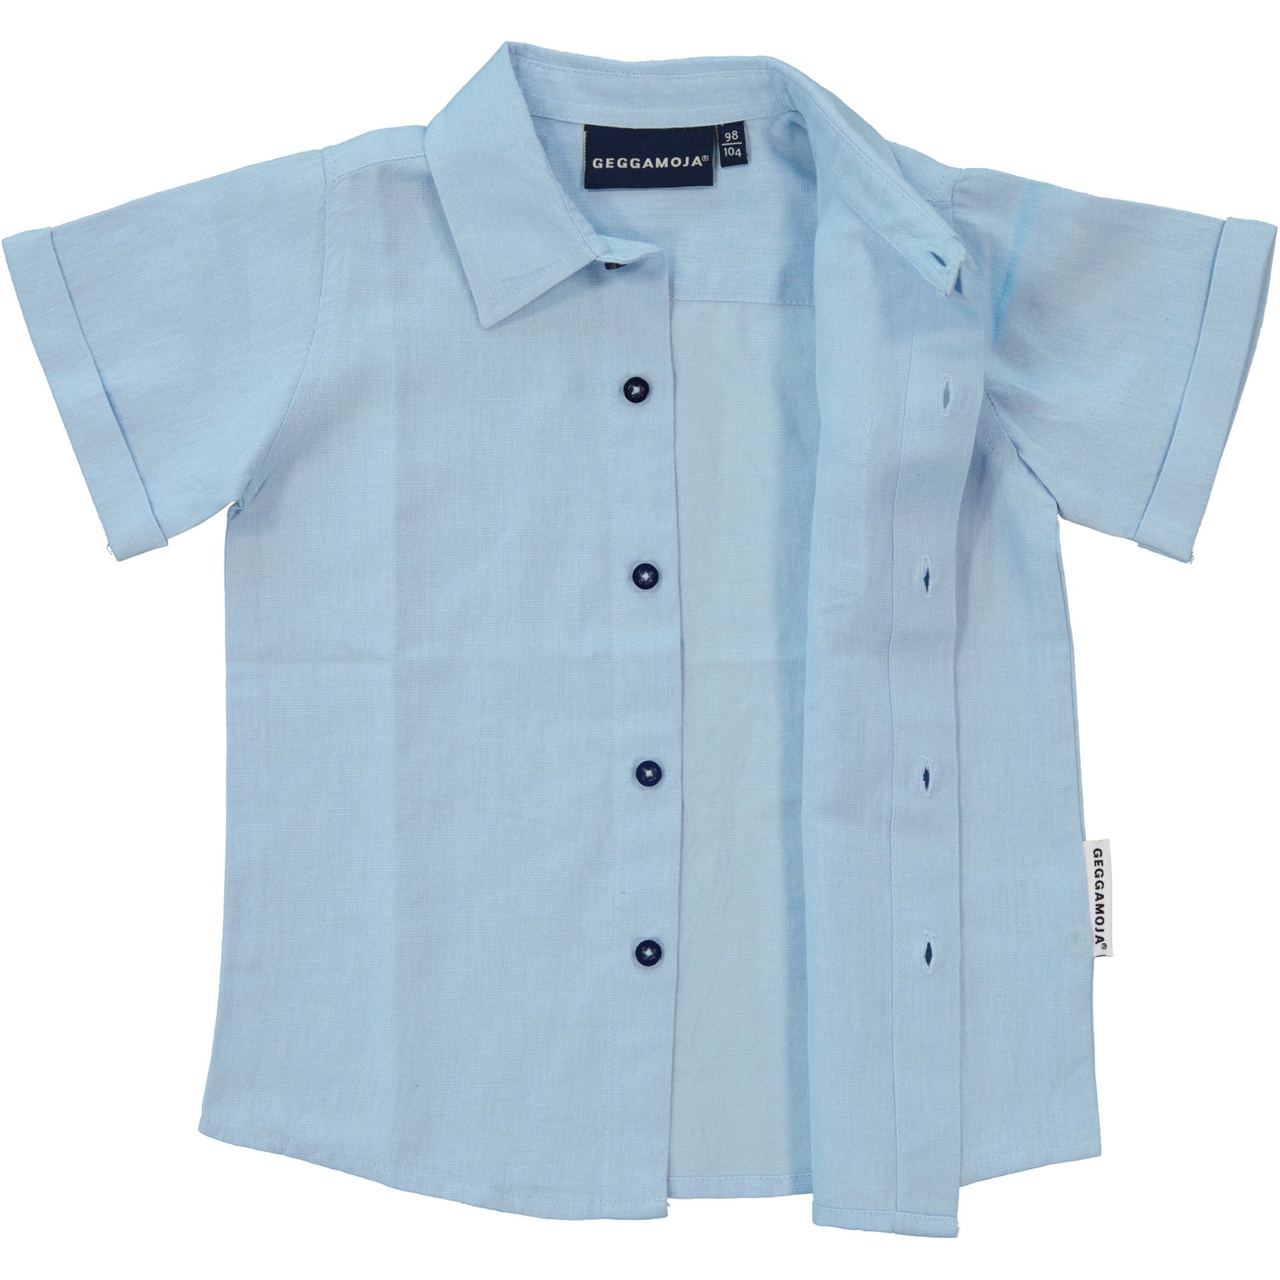 Linnen Shirt S.S Light blue 134/140